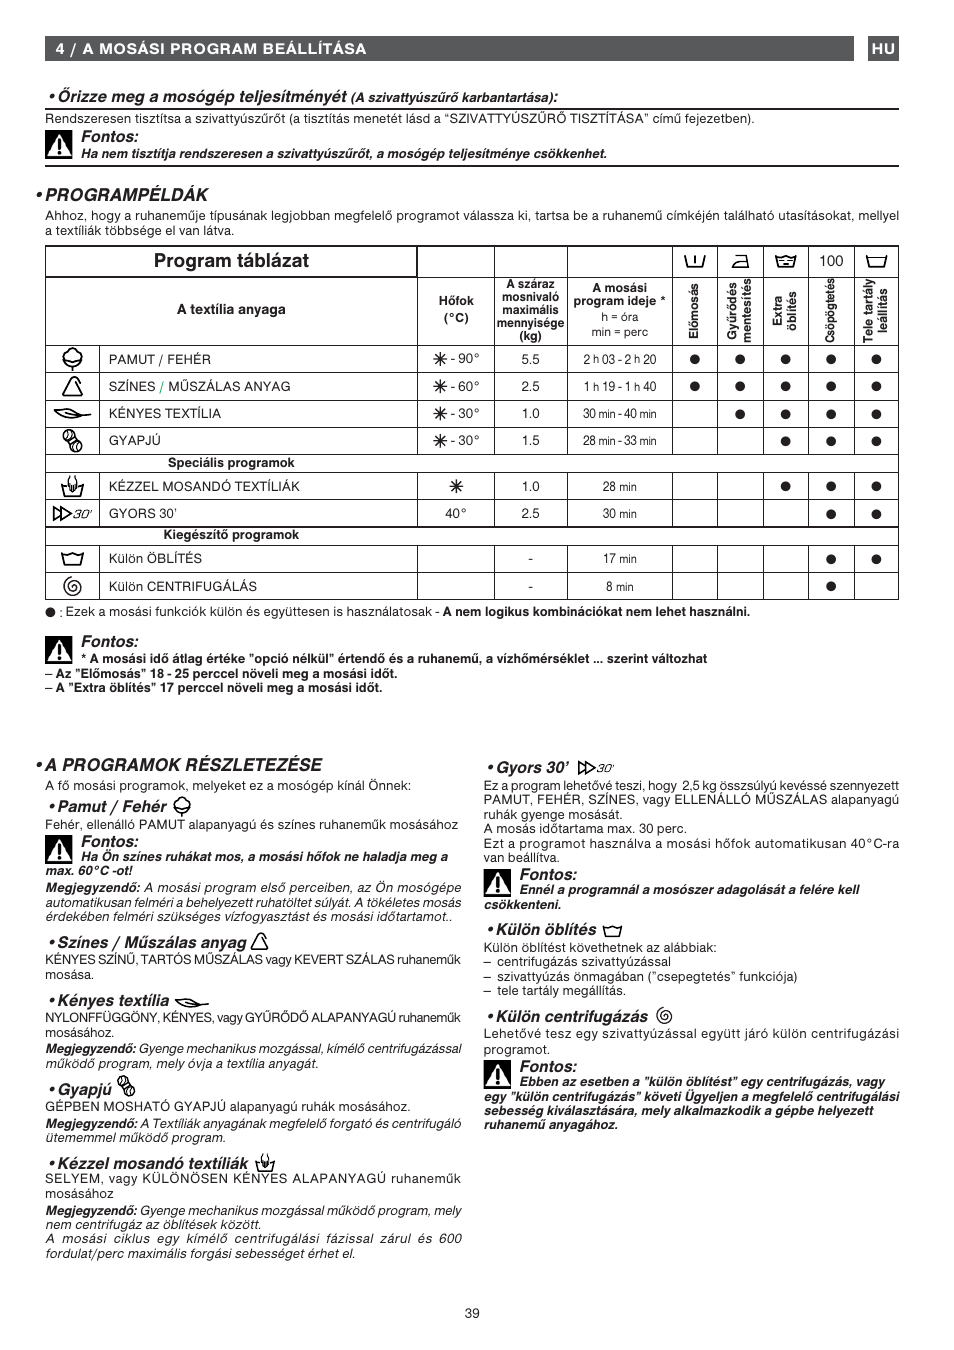 Program táblázat, Programpéldák •a programok részletezése, Őrizze meg a  mosógép teljesítményét | Fagor 1FET-107W User Manual | Page 39 / 44